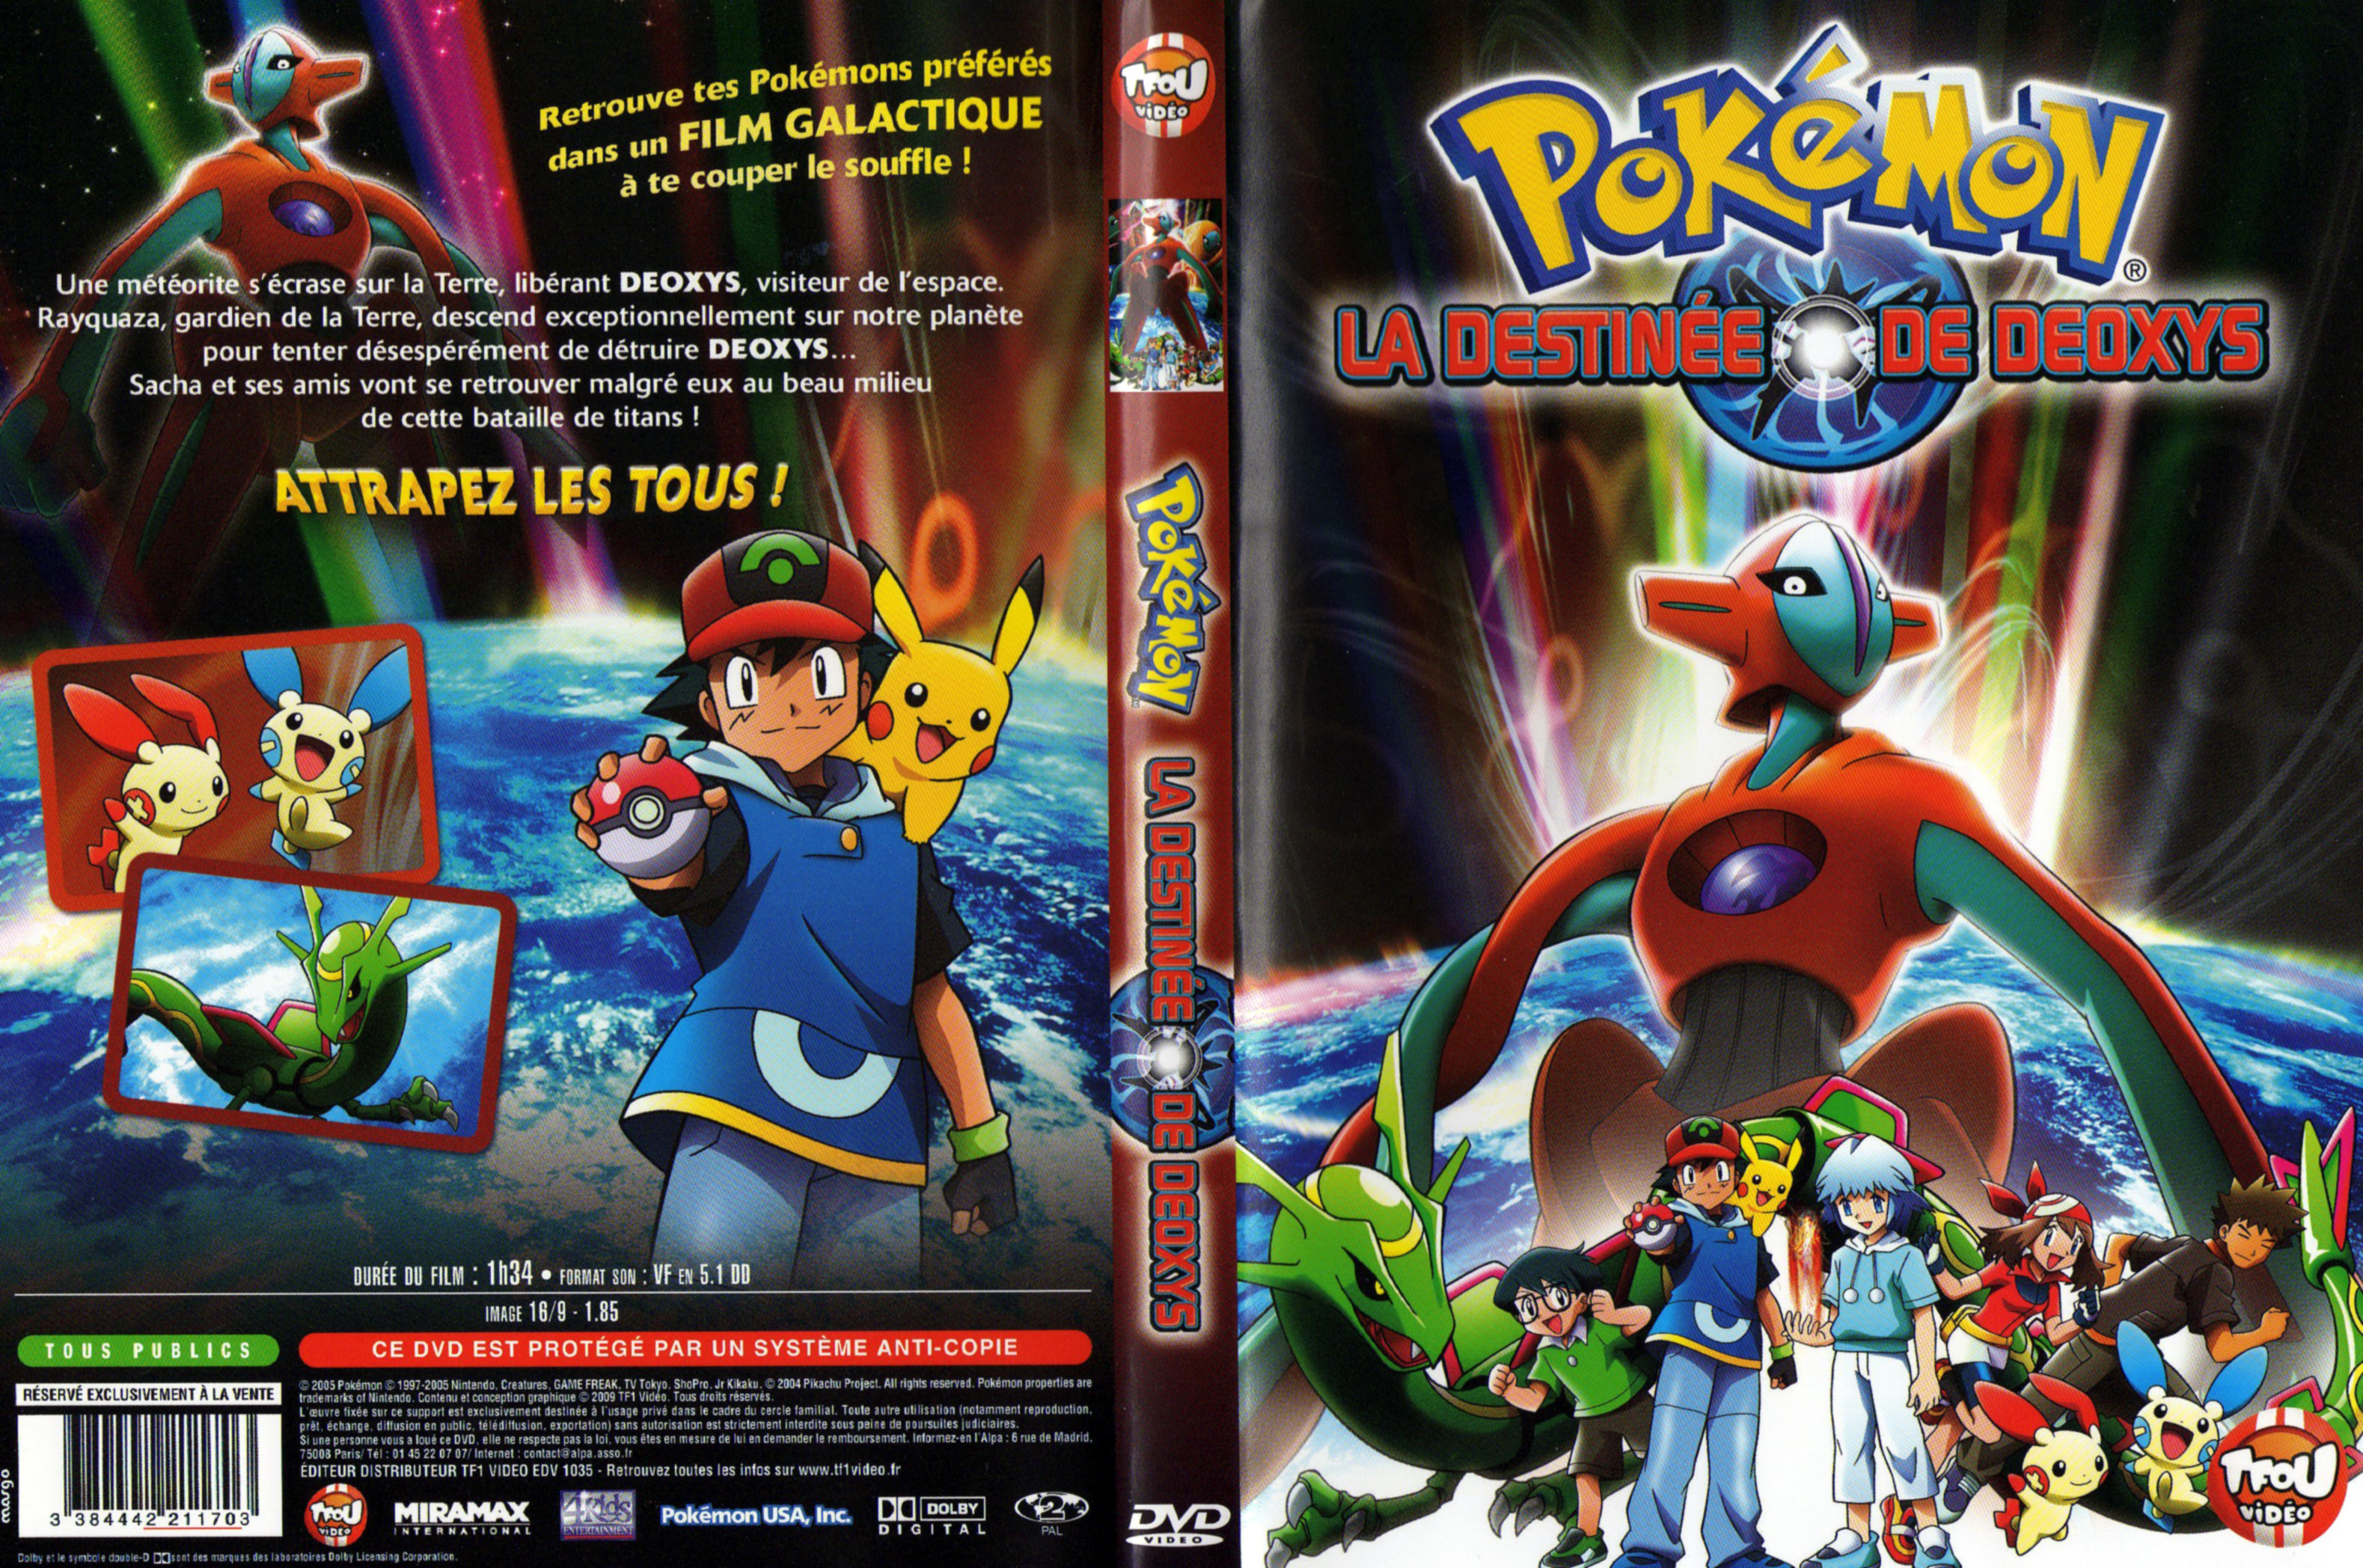 Jaquette DVD Pokemon - La destine des Deoxys